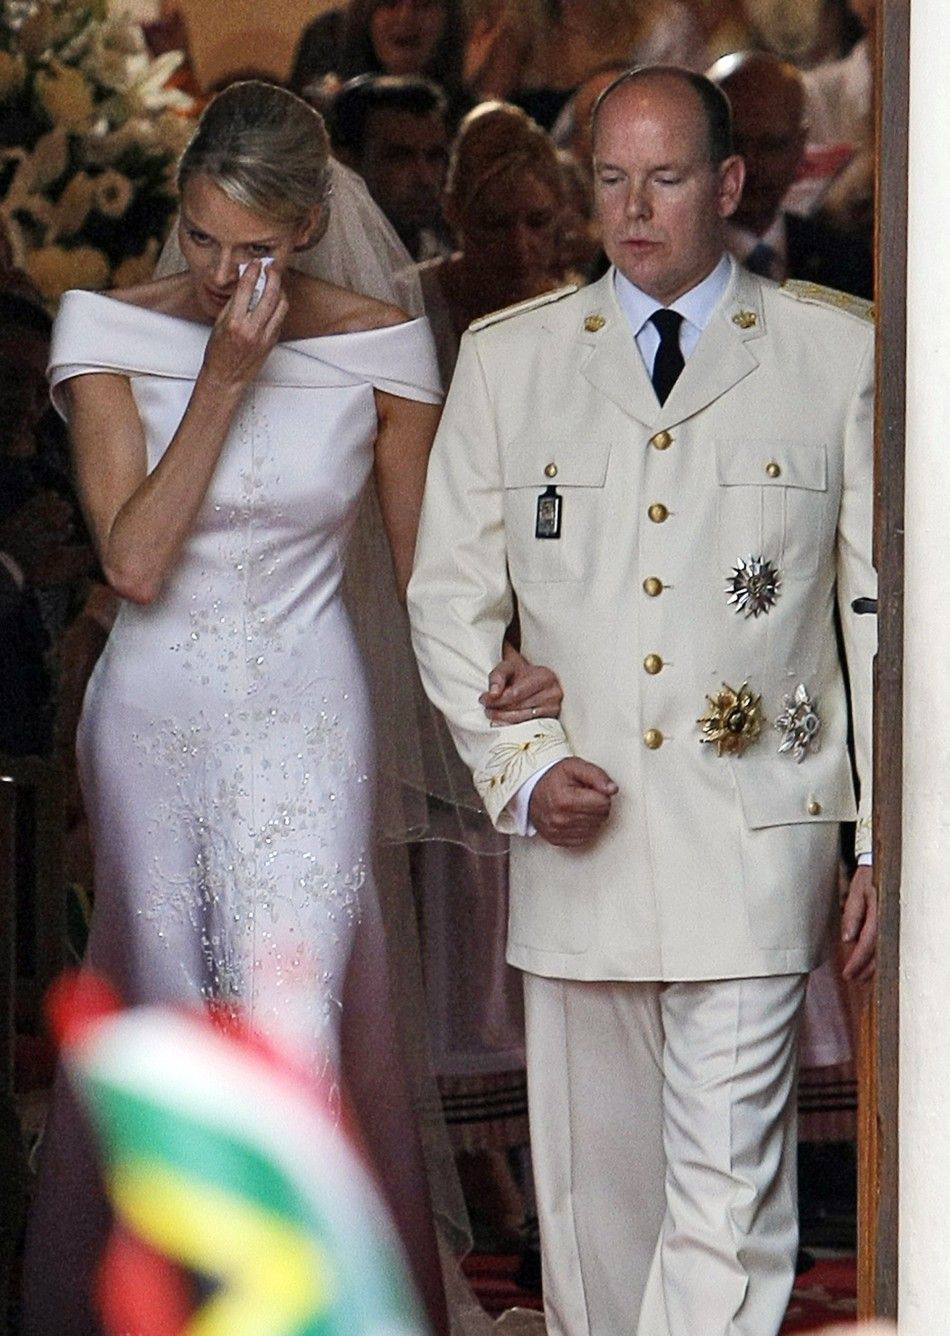 Monaco’s New Princess Charlene: Are Those Tears of Joy?